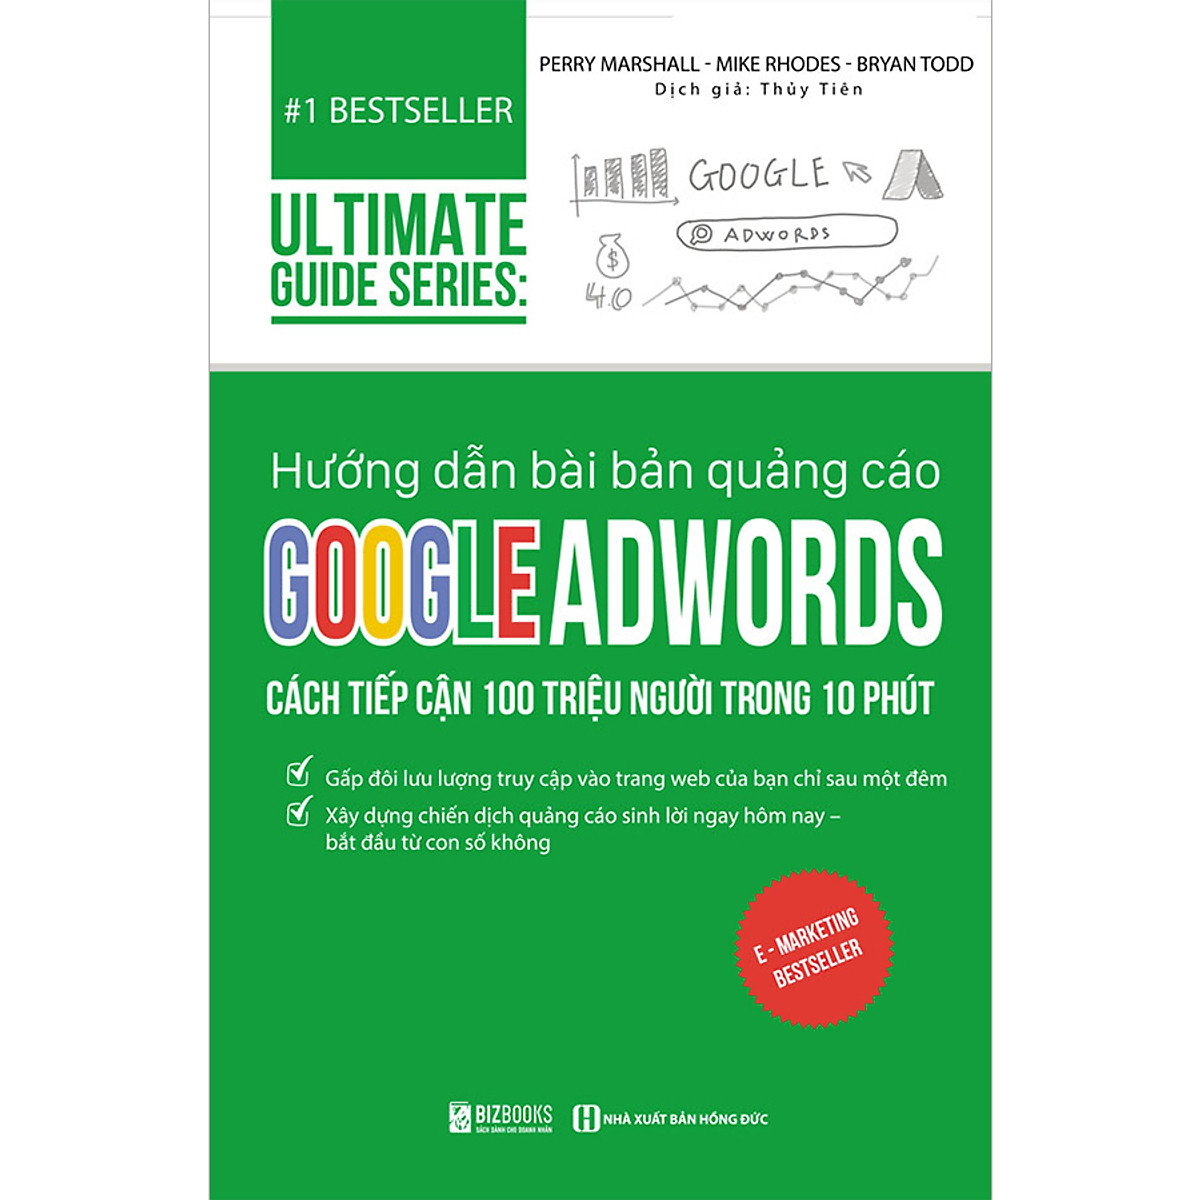 Hướng Dẫn Bài Bản Quảng Cáo Google Adswords: Cách Tiếp Cận 100 Triệu Người Trong 10 Phút